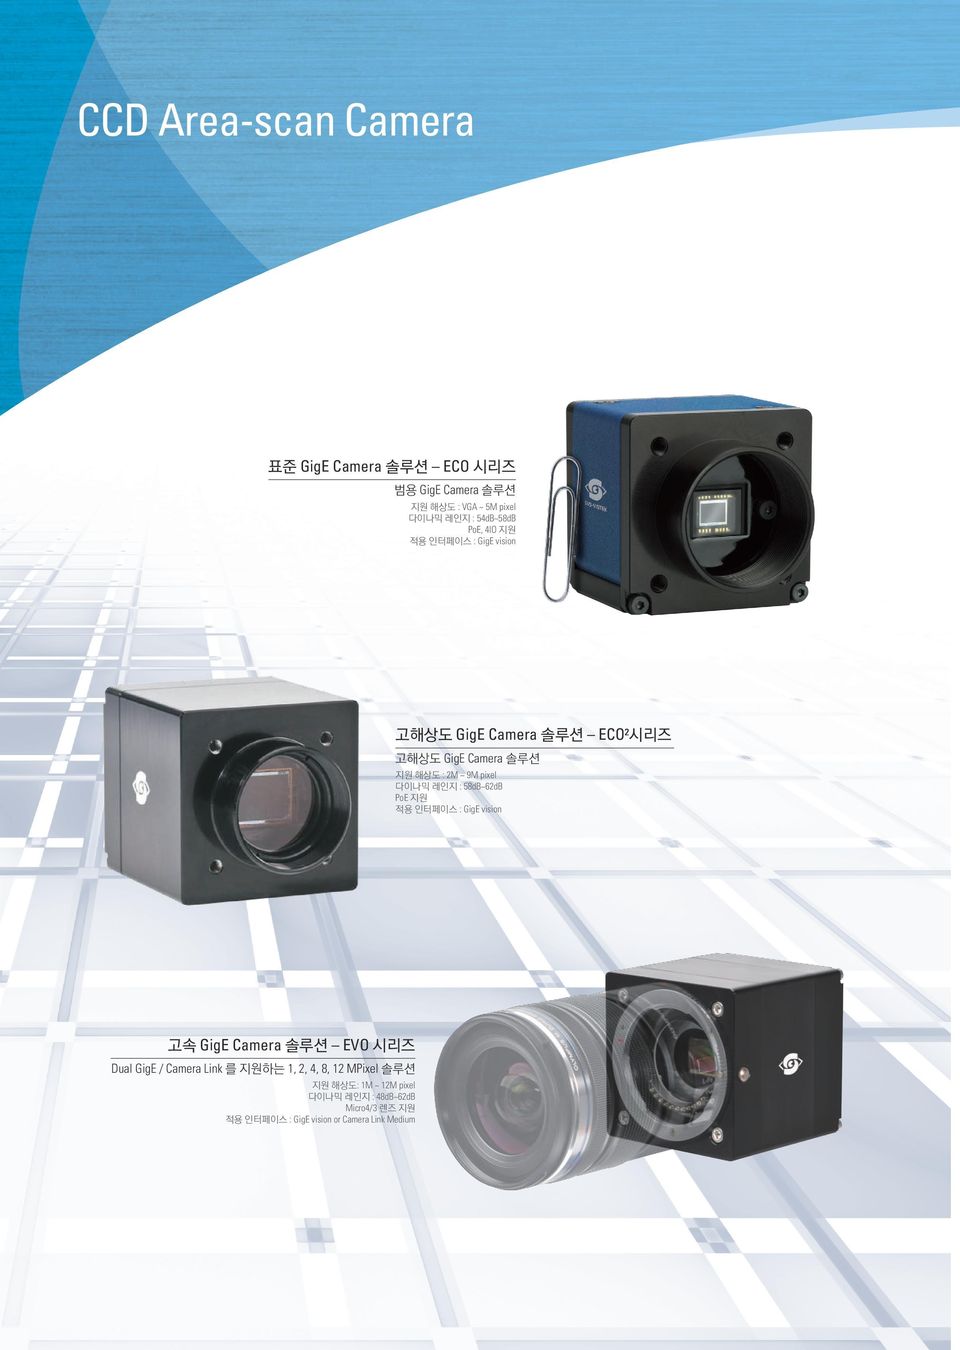 레인지 : 58dB~62dB PoE 지원 적용 인터페이스 : GigE vision 고속 GigE Camera 솔루션 EVO 시리즈 Dual GigE / Camera Link 를 지원하는 1, 2, 4,